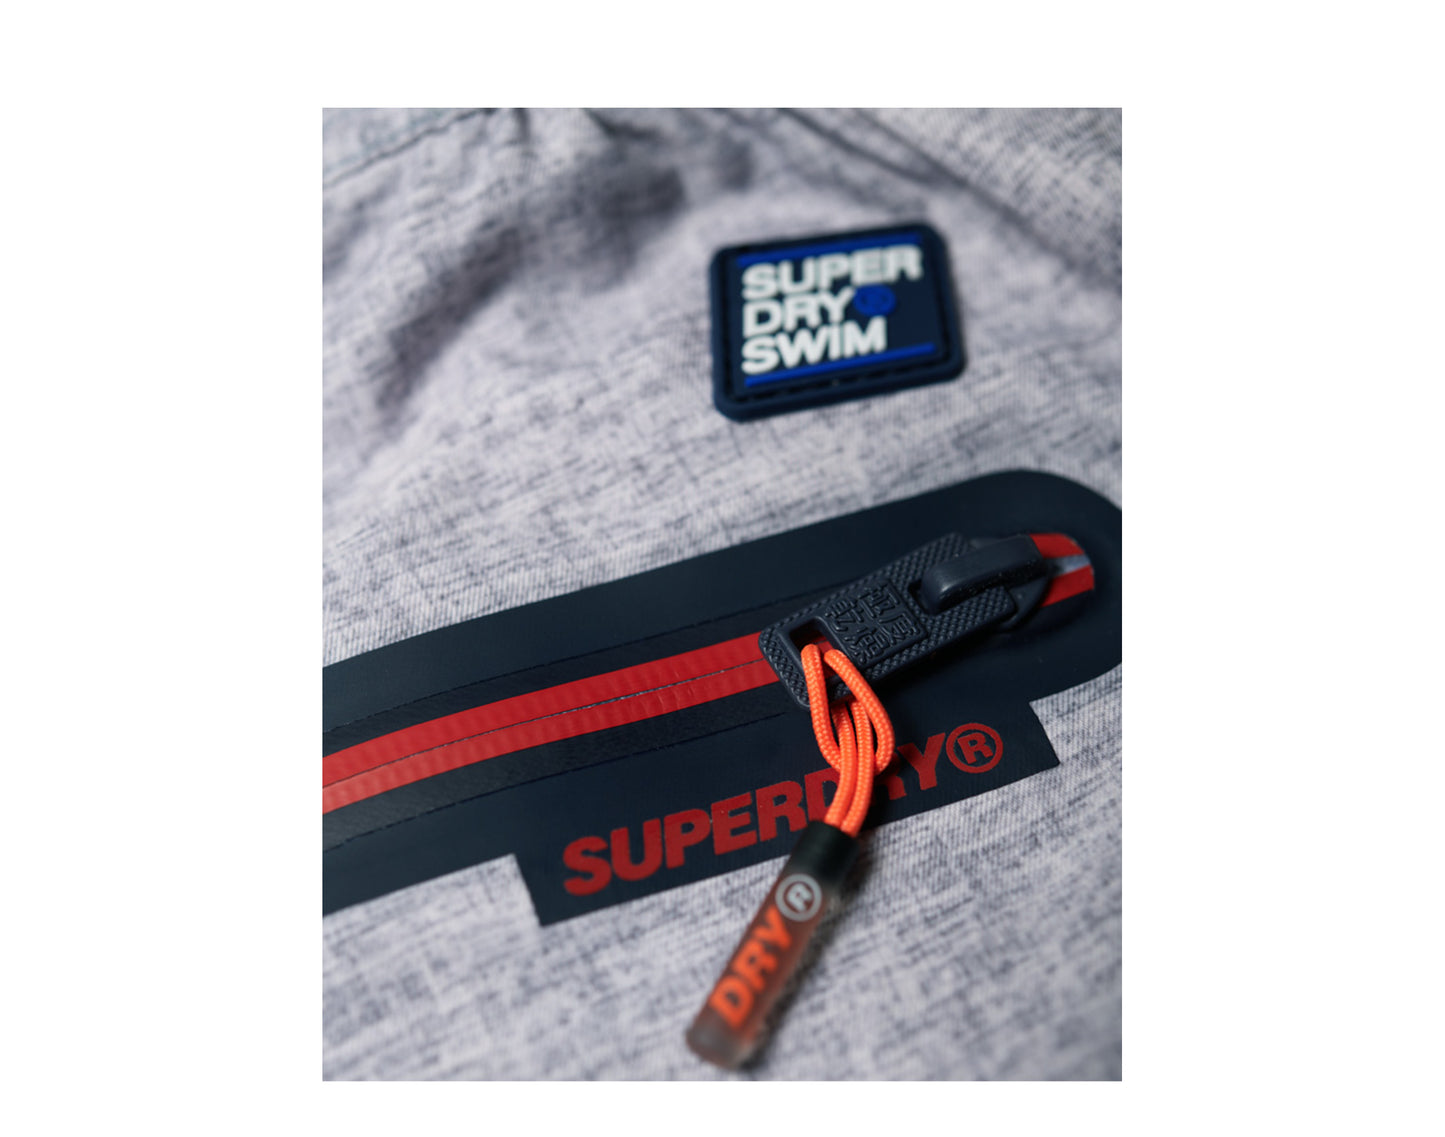 Superdry Board Shorts Men's Swimwear